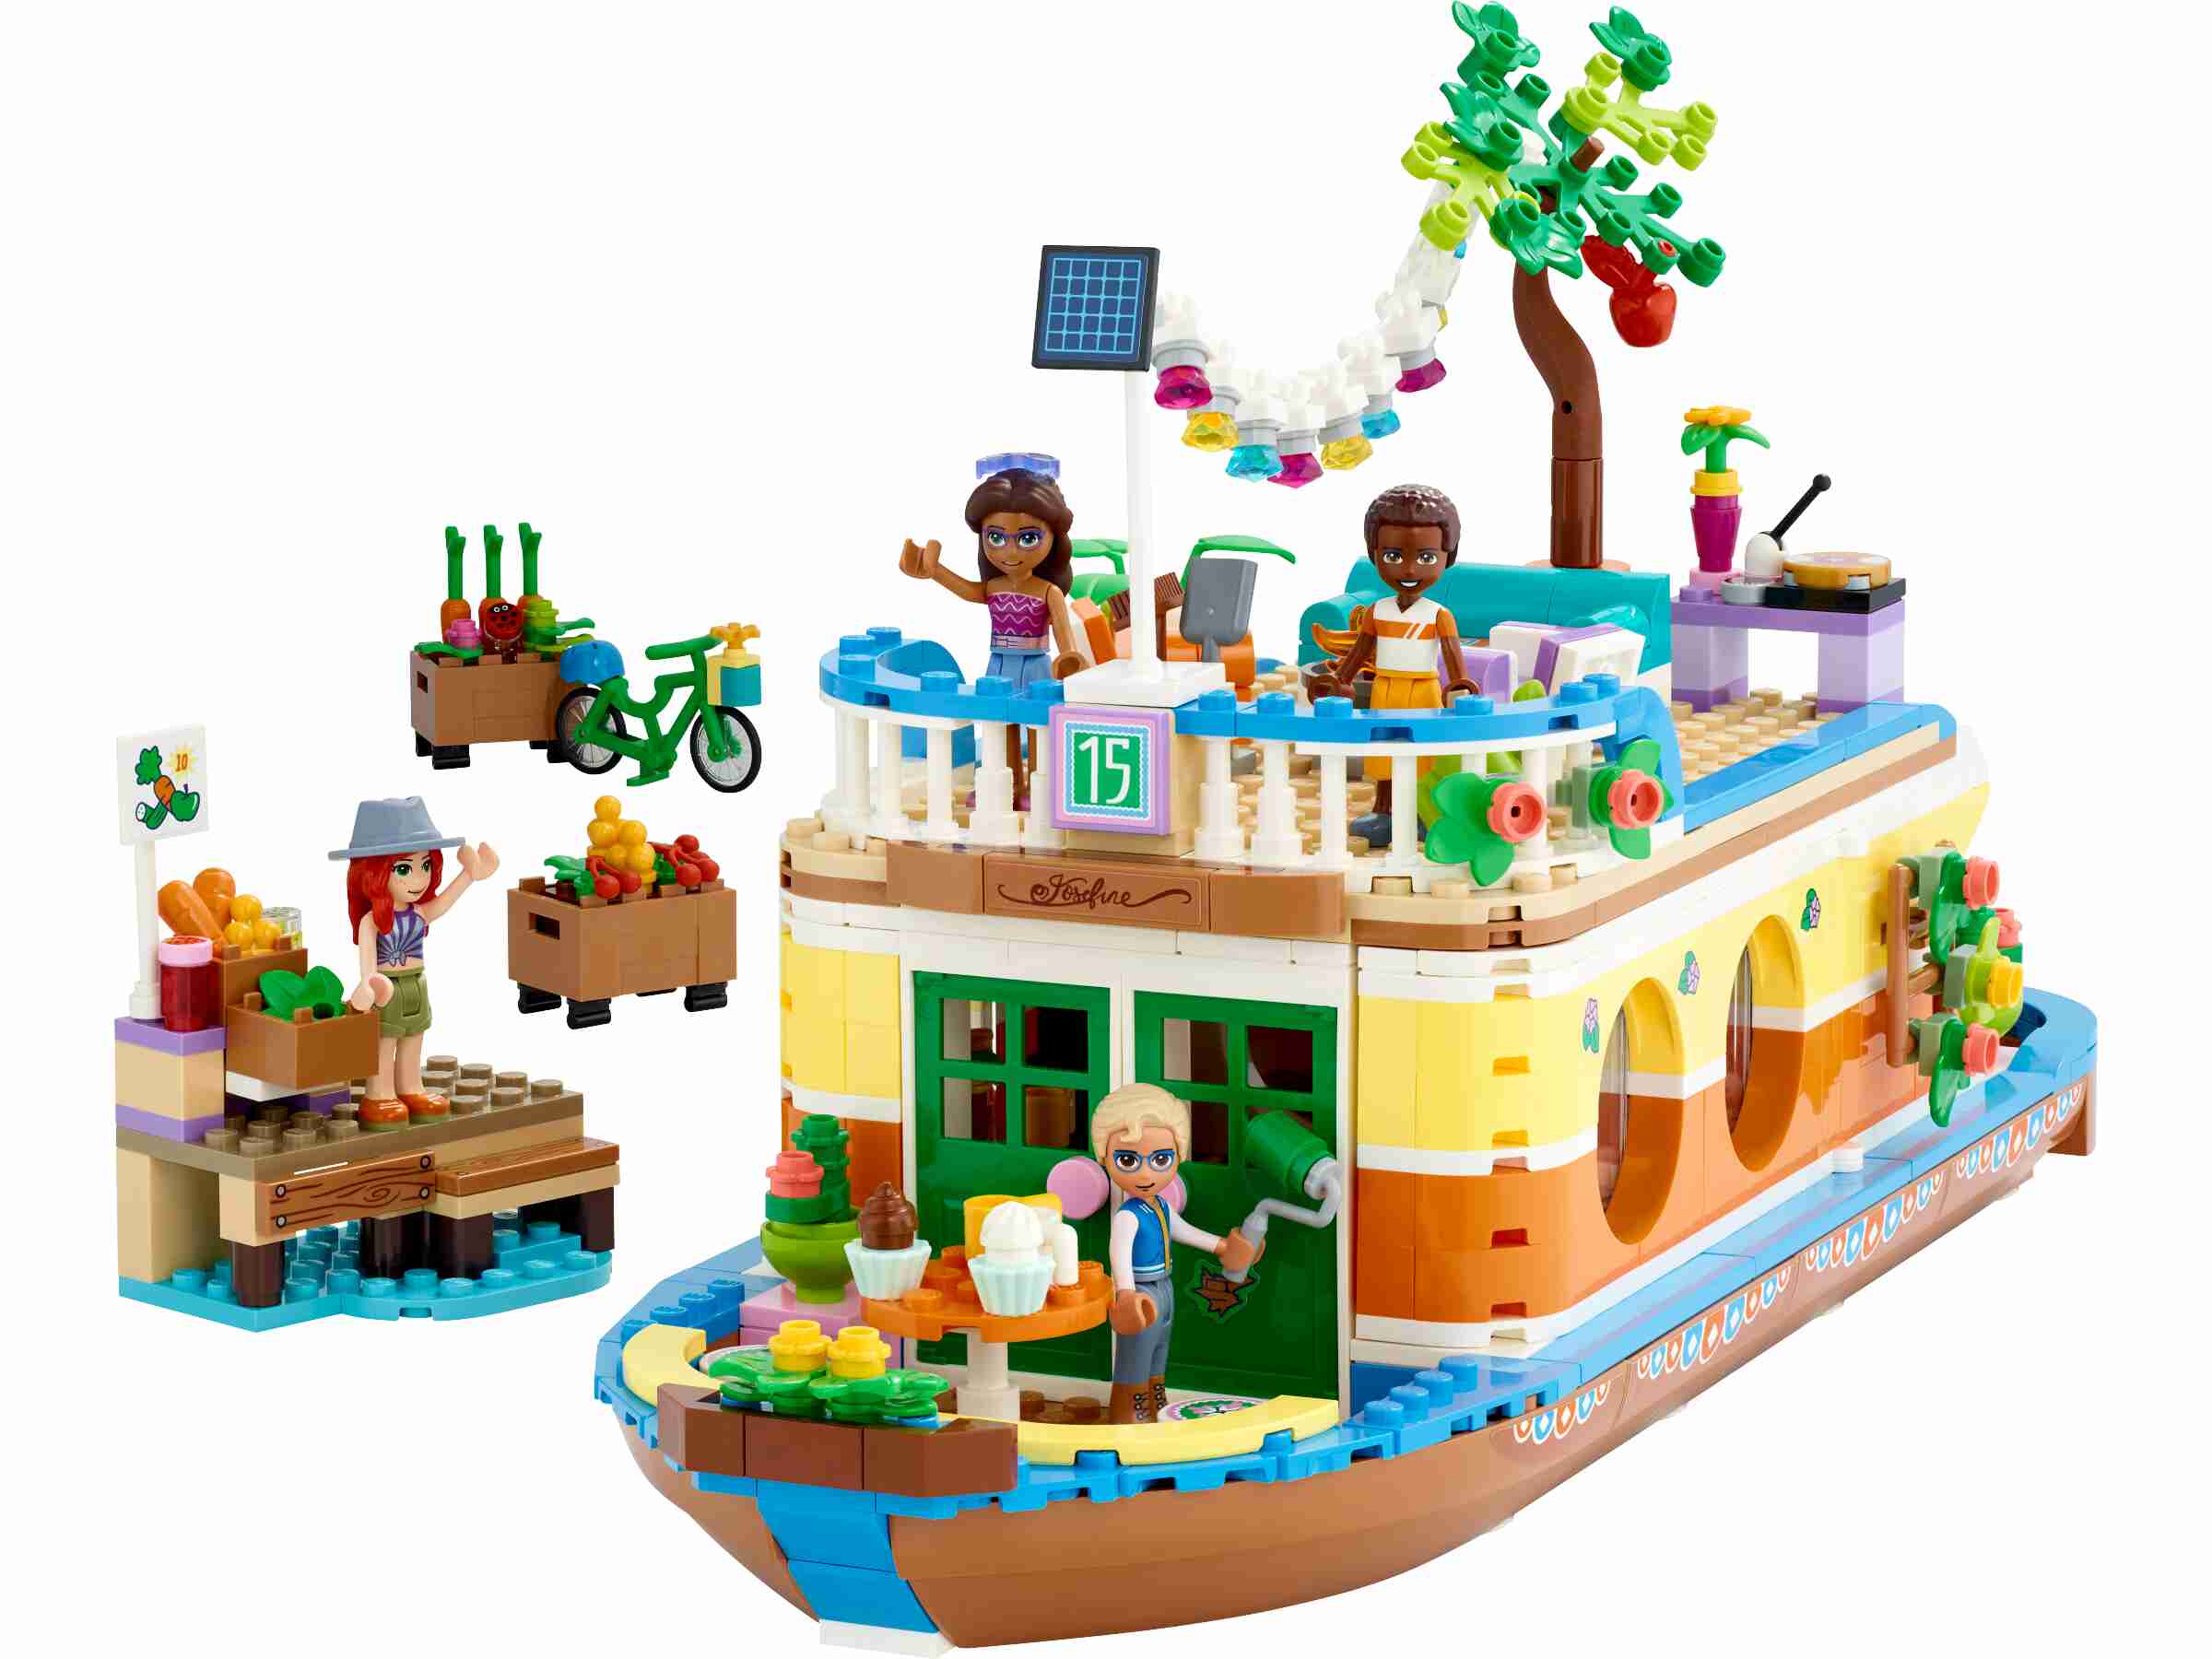 LEGO 41702 Friends Hausboot, mit Garten, 4 Mini-Puppen und Tierfigur 